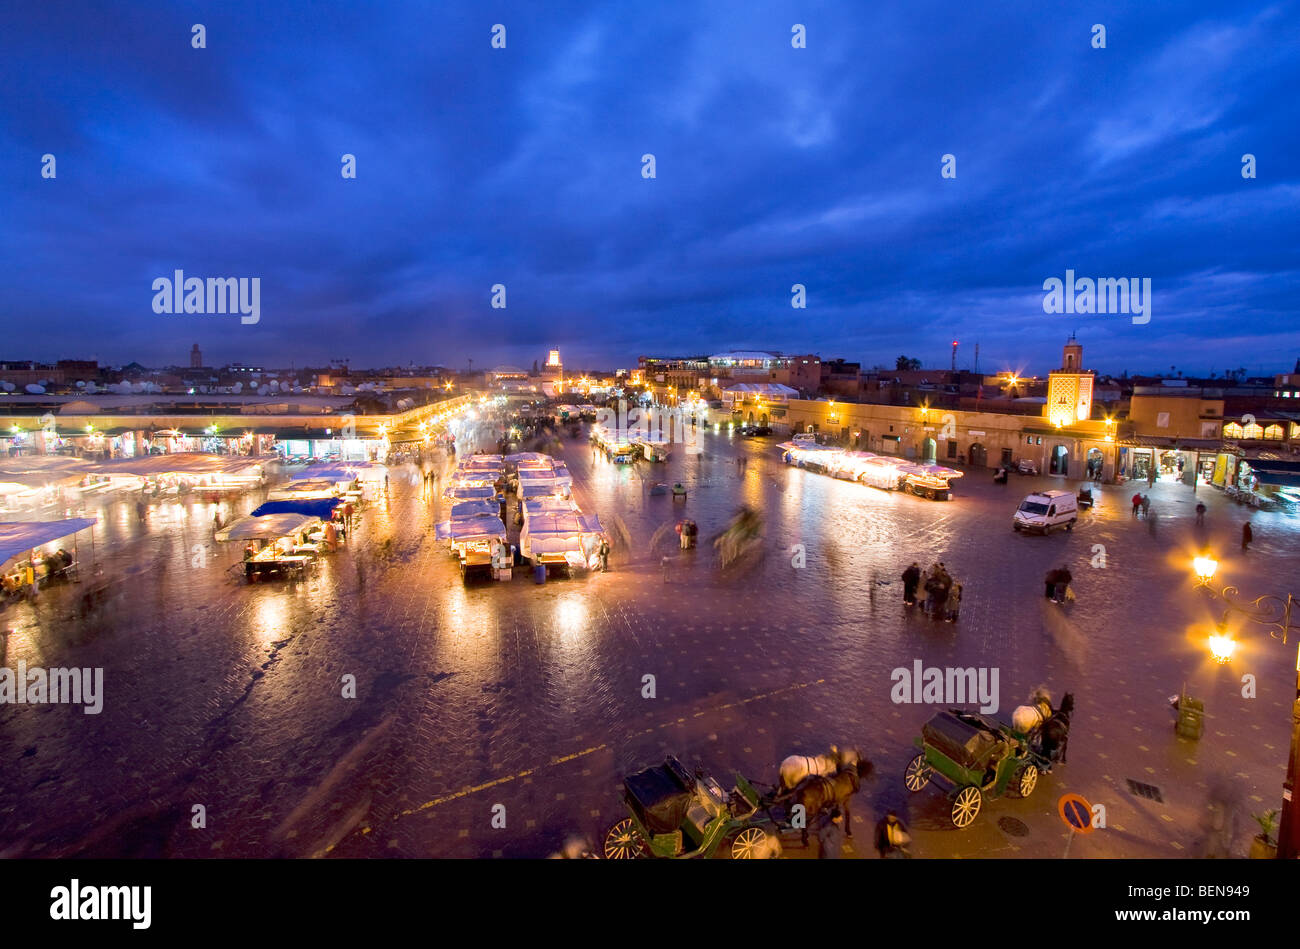 Paysage urbain. Place Djemaa el Fna, Marrakech au crépuscule, le Maroc, l'Afrique Banque D'Images